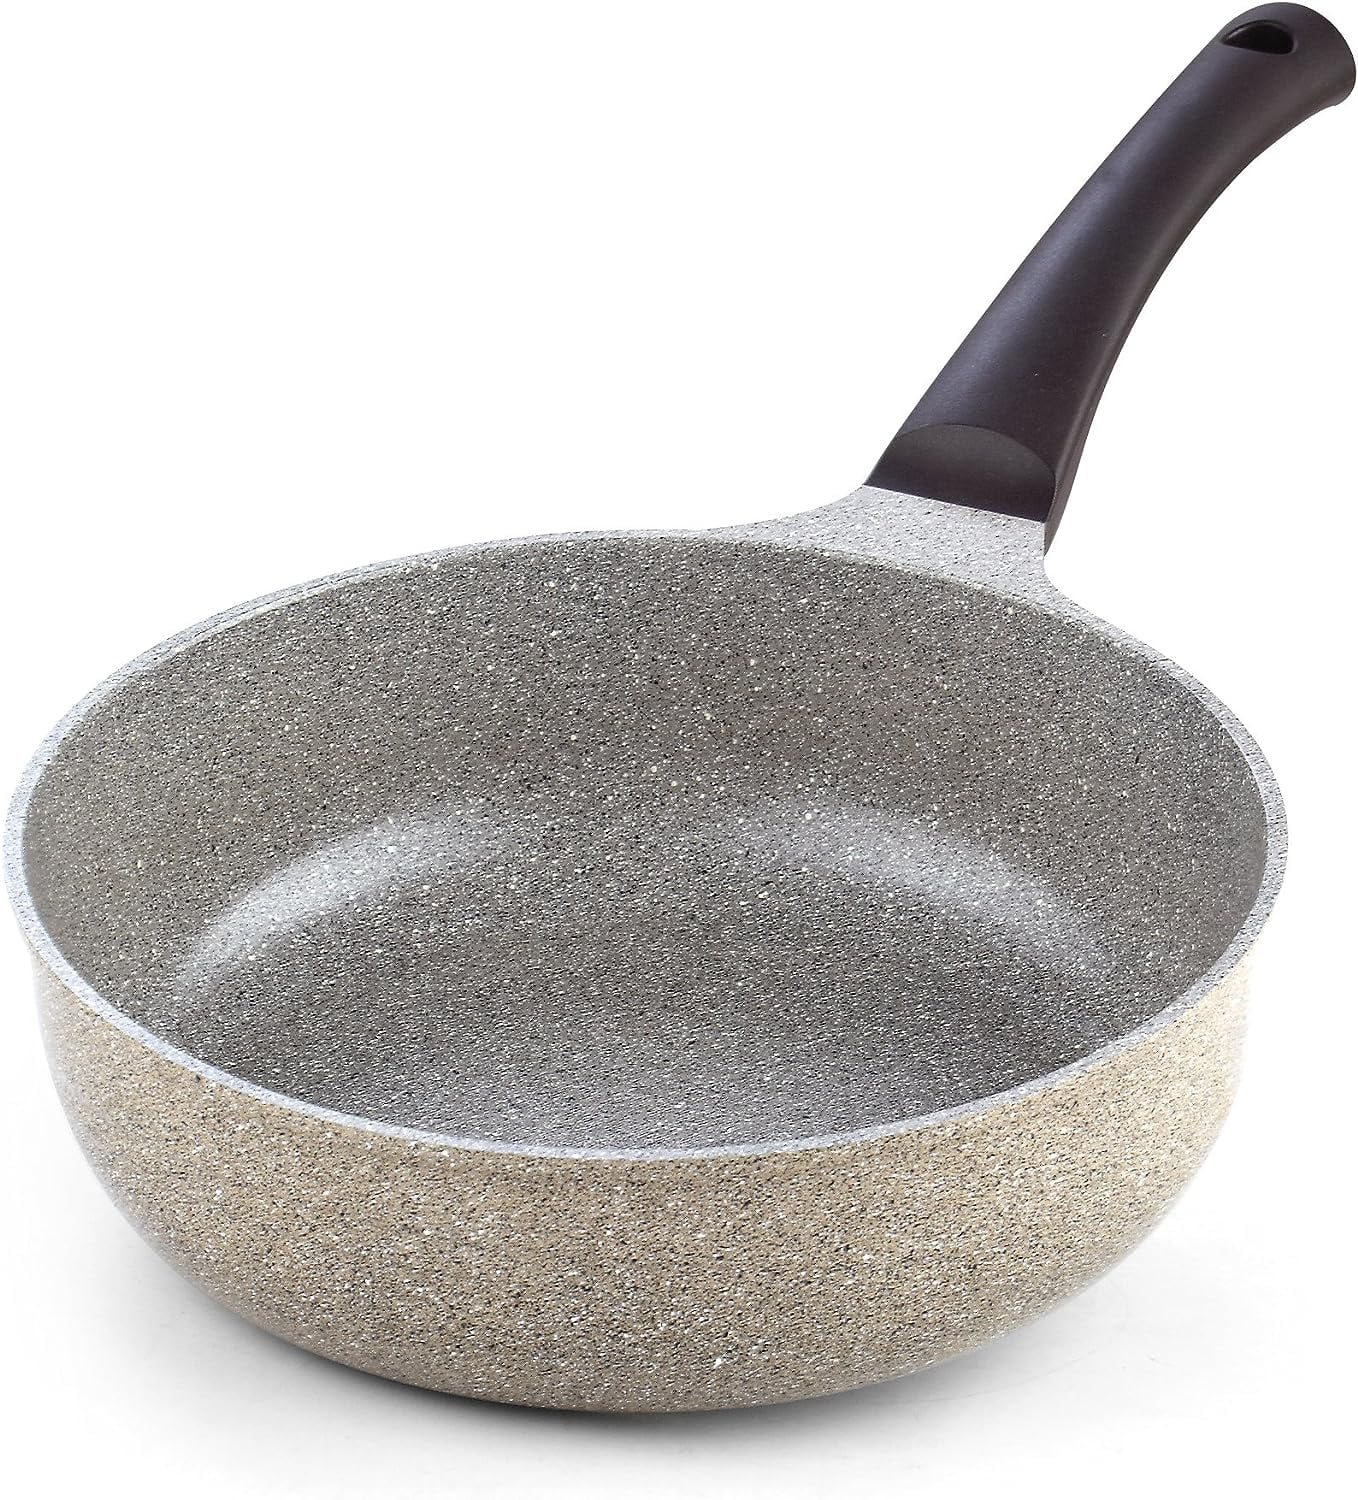 Otantik | Pots and Pans| Non-Stick 11” Square Grill Pan Cast Aluminum - Griddle Pan with Pour Spouts - Ceramic Marble Coating - Cool Handle - PTFE 